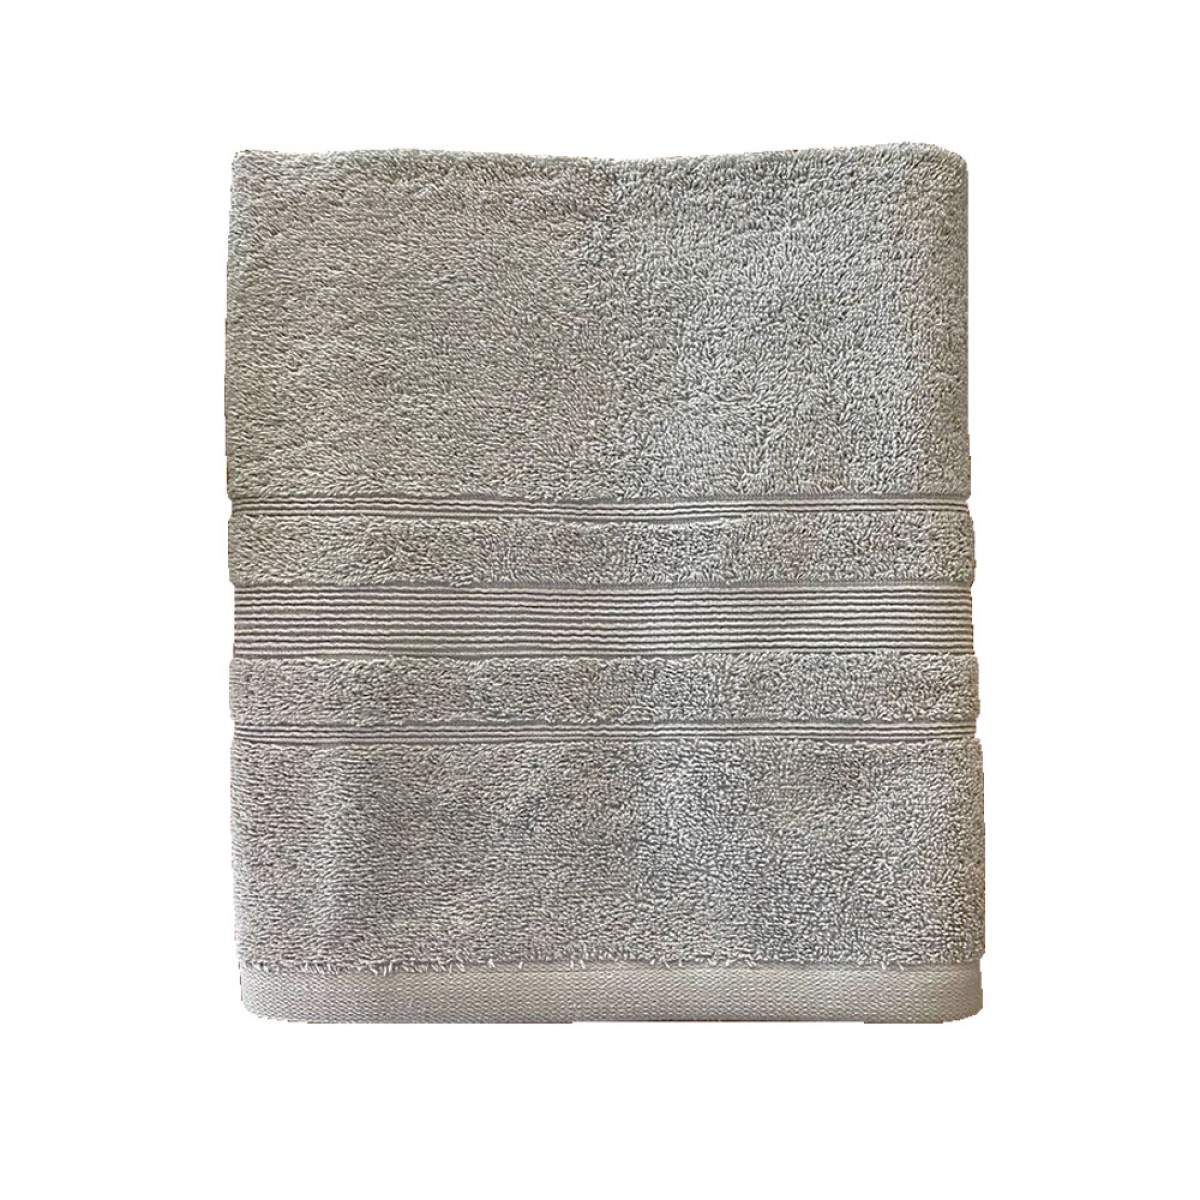 Πετσέτα Σώματος 550grs (70x140) 100% Βαμβάκι με μπορντούρα με ανάγλυφο σχέδιο ανοιχτό γκρι χρώμα Sidirela Line E-3203-5